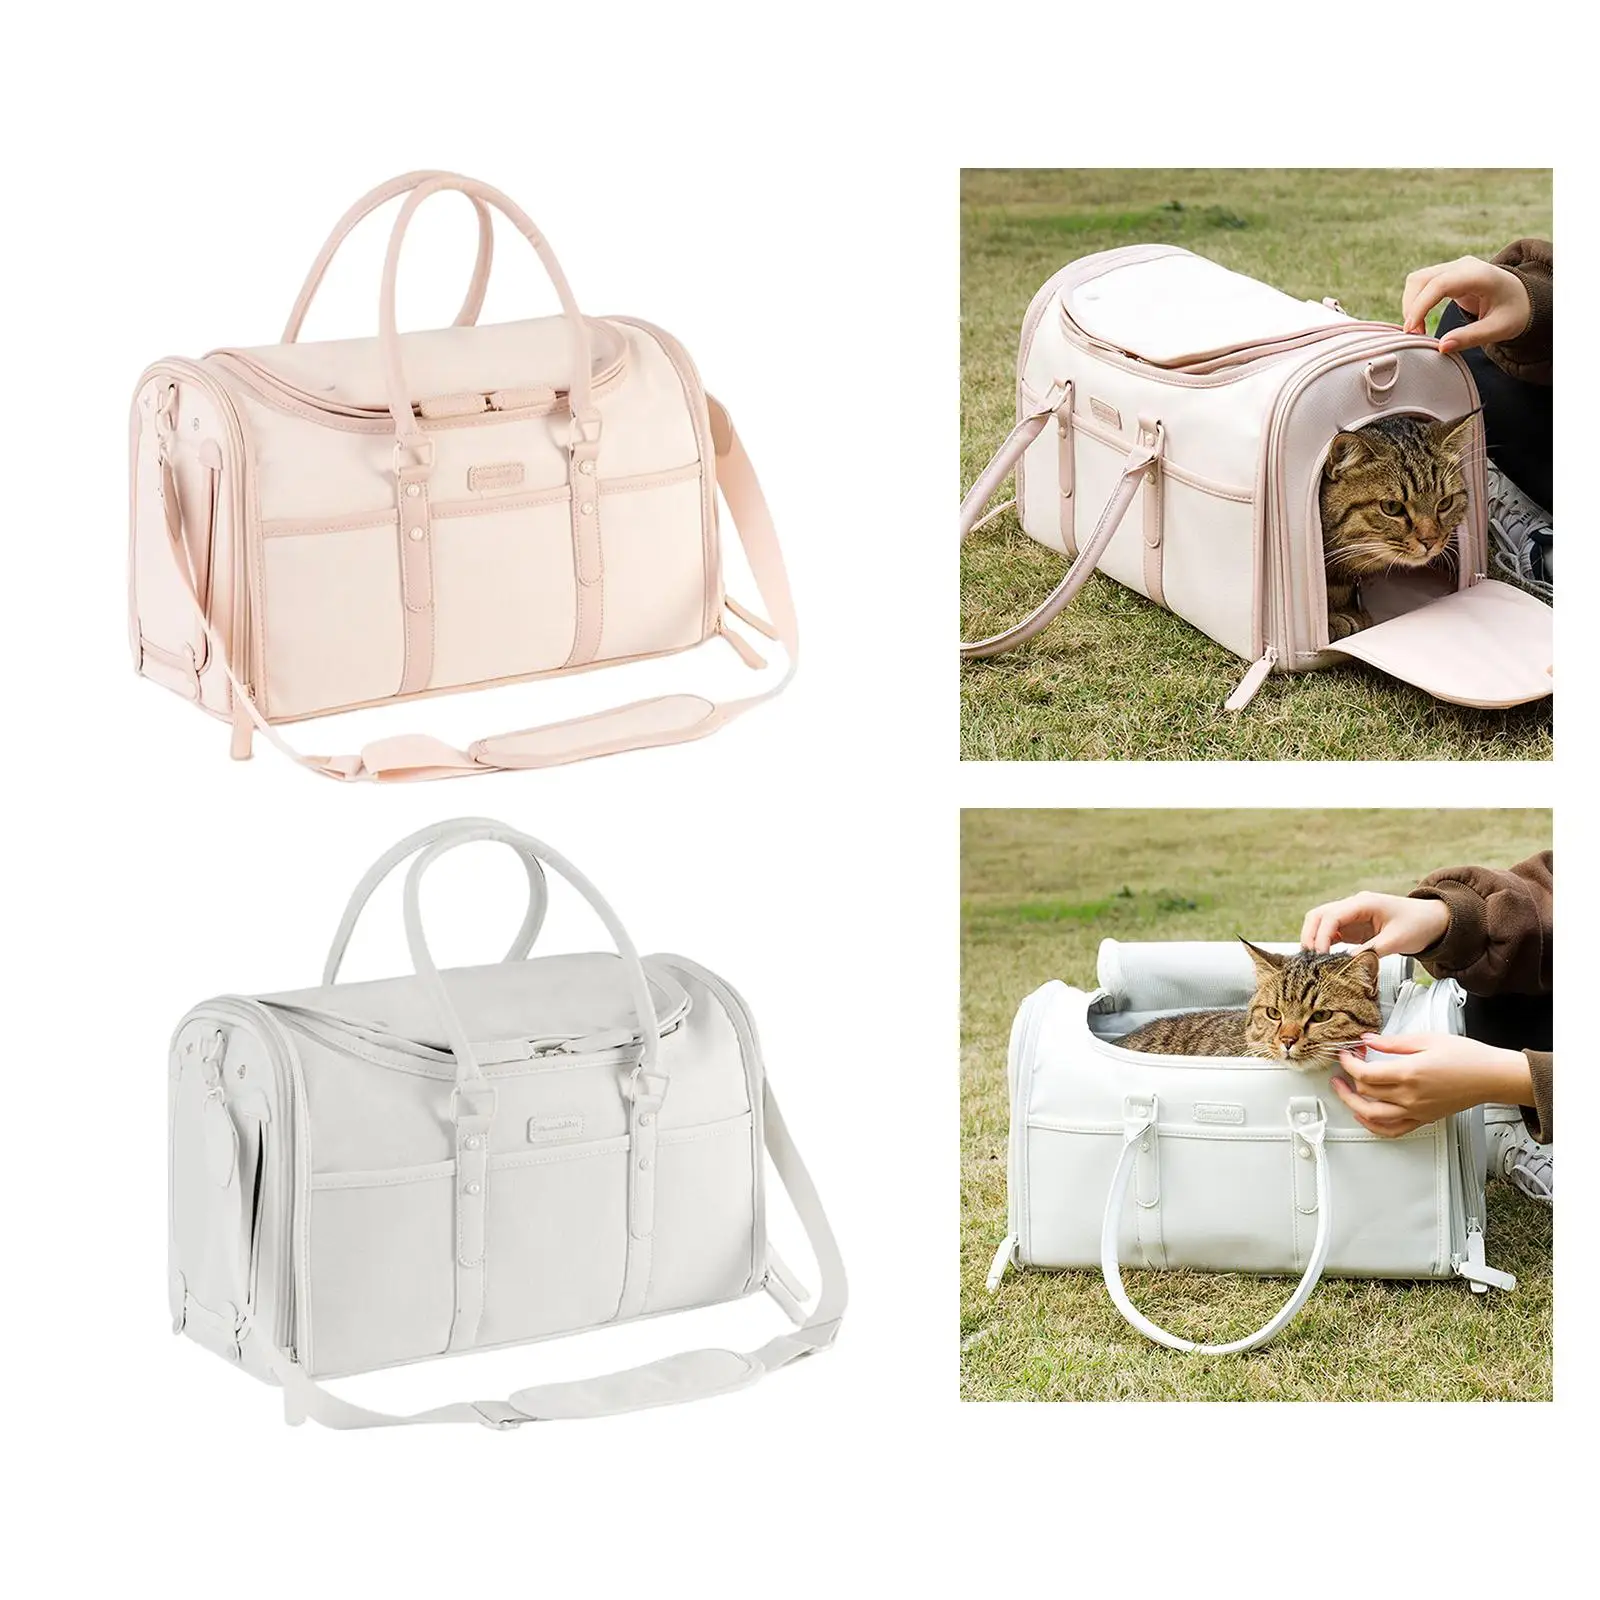 Pet Carrier Pet Travel Transport Bag Pet Bag Portable Tote Bag Dog Carrier Cat Carrier Bag for Dog Cat Outdoor Sightseeing